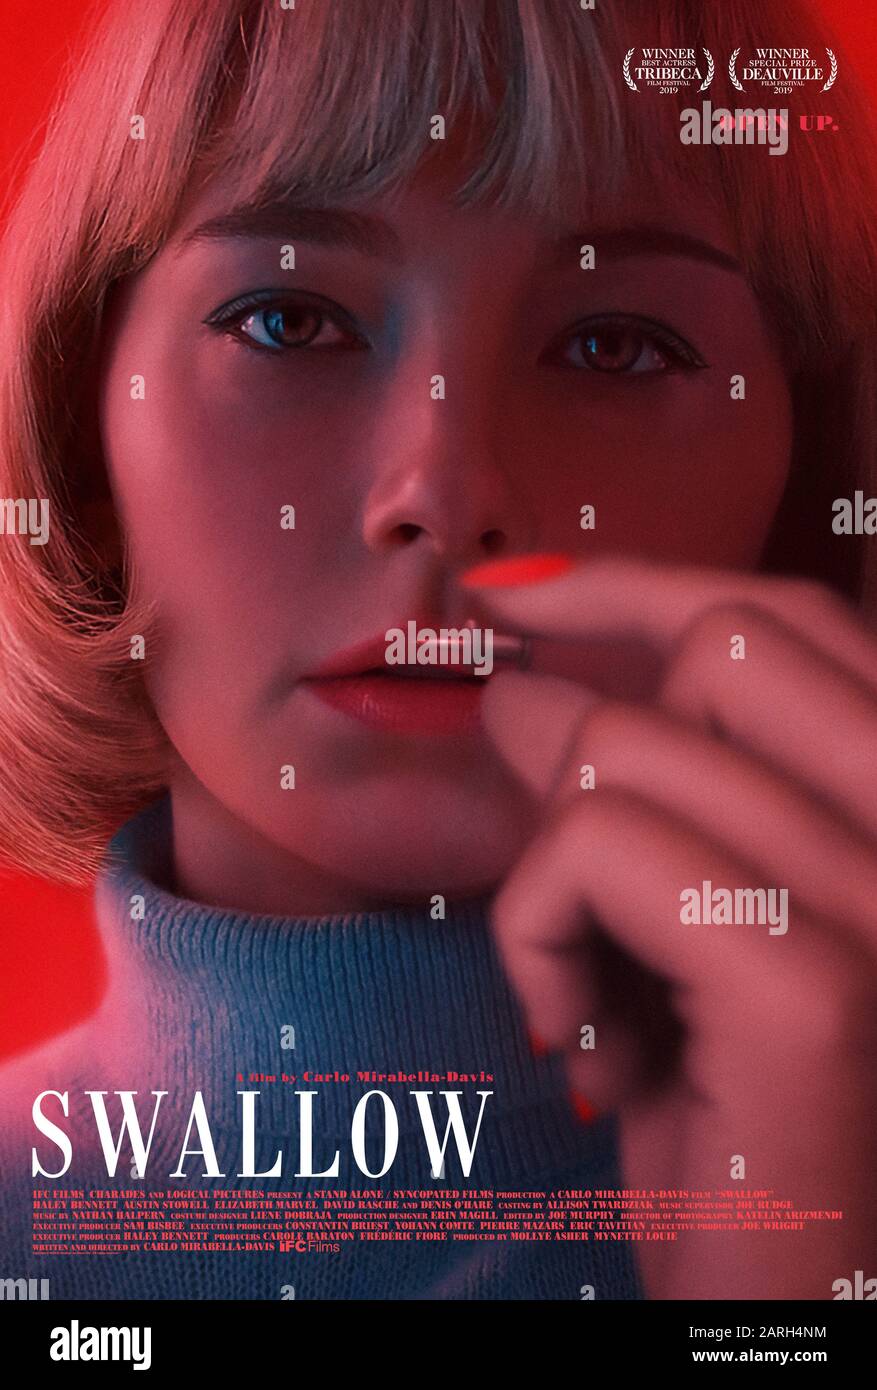 Swallow (2019) unter der Regie von Carlo Mirabella-Davis und mit Haley Bennett, Austin Stowel, Denis O'Hare und Elizabeth Marvel in den Hauptrollen. Öffnen Sie. Eine schwangere Frau wird gezwungen, gefährliche Gegenstände zu schlucken. Stockfoto